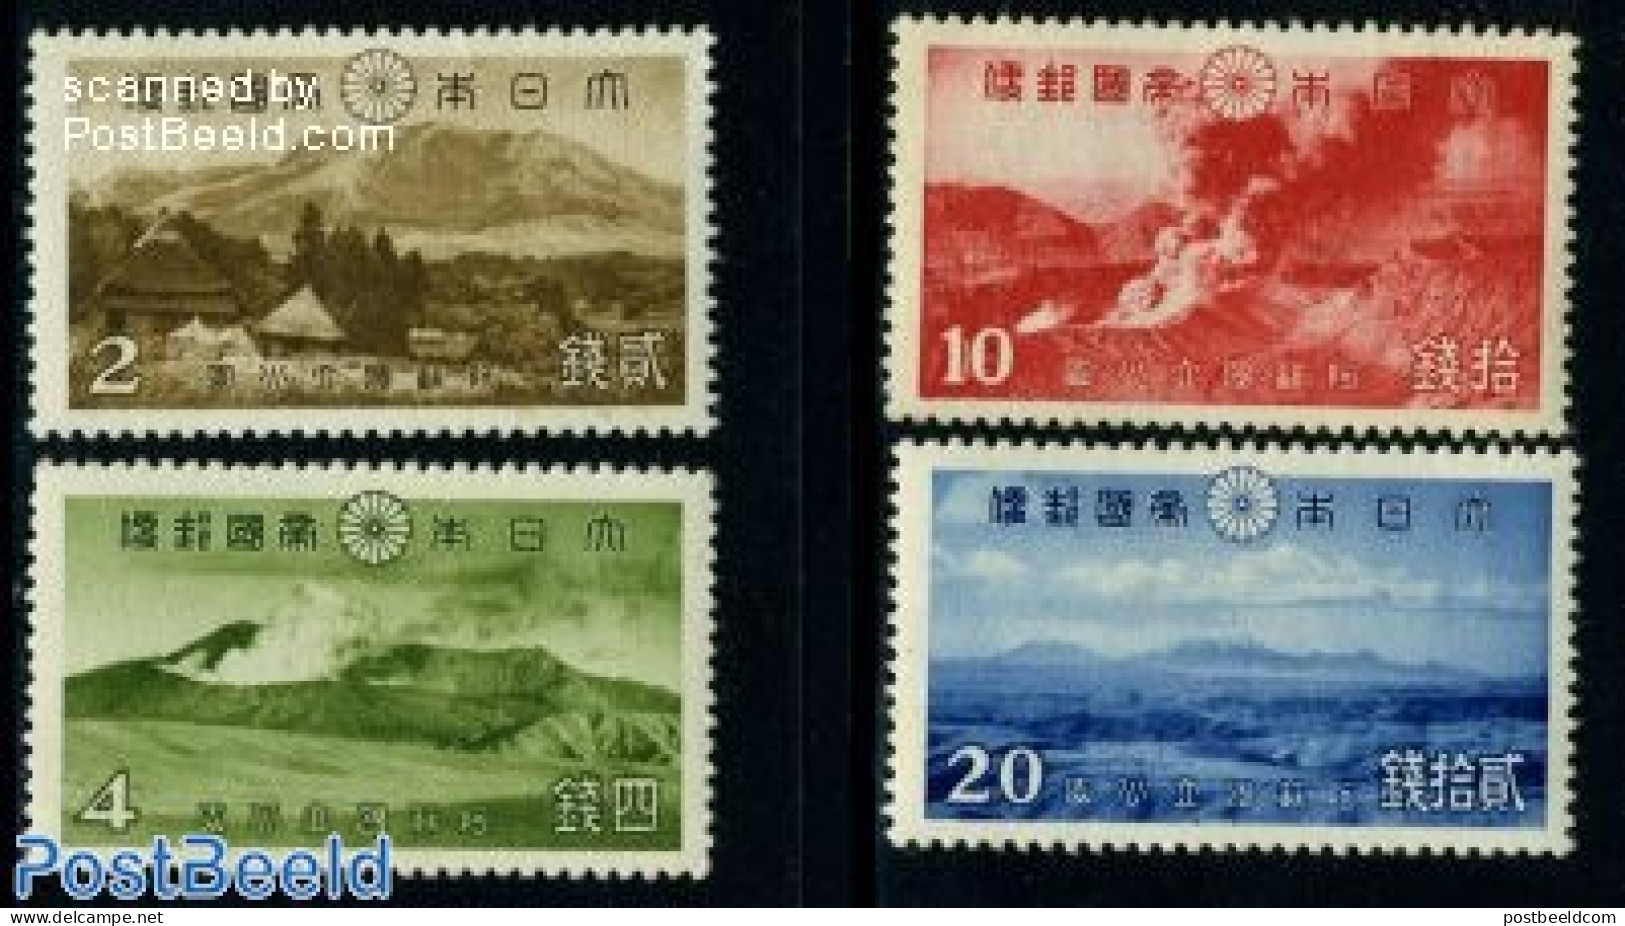 Japan 1939 Landscapes 4v, Mint NH - Ongebruikt